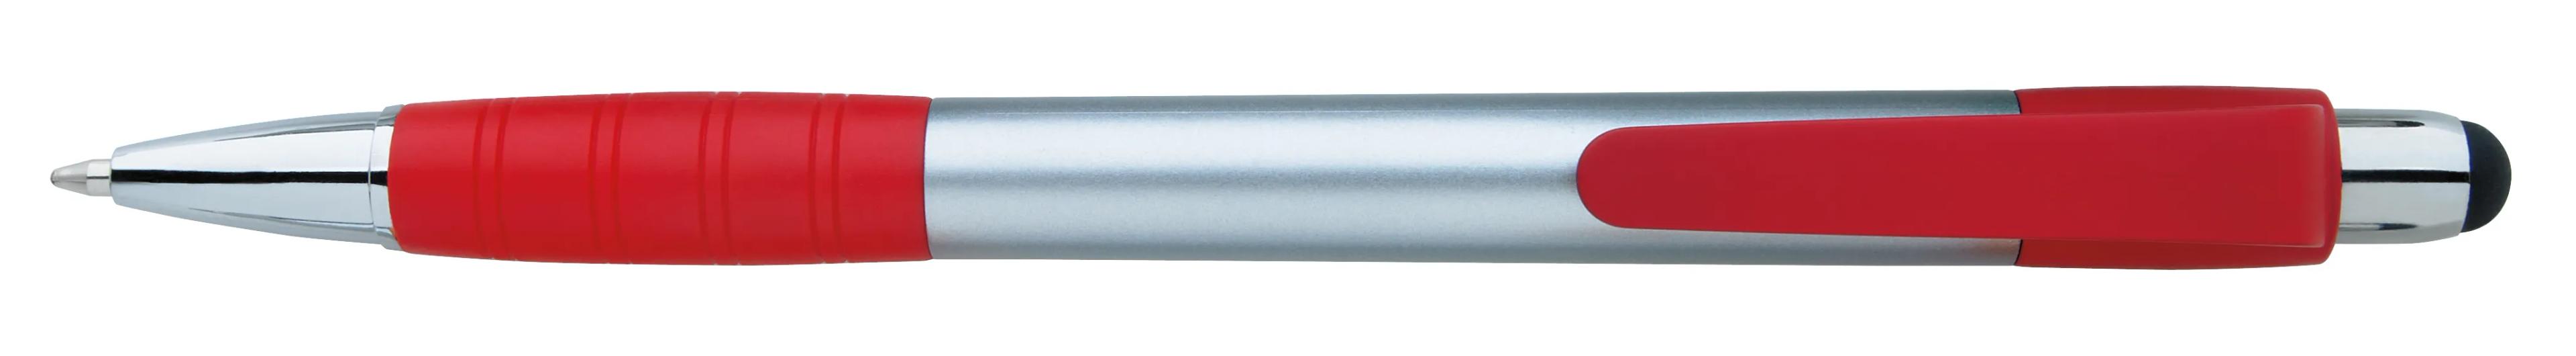 Silver Element Stylus Pen 19 of 53